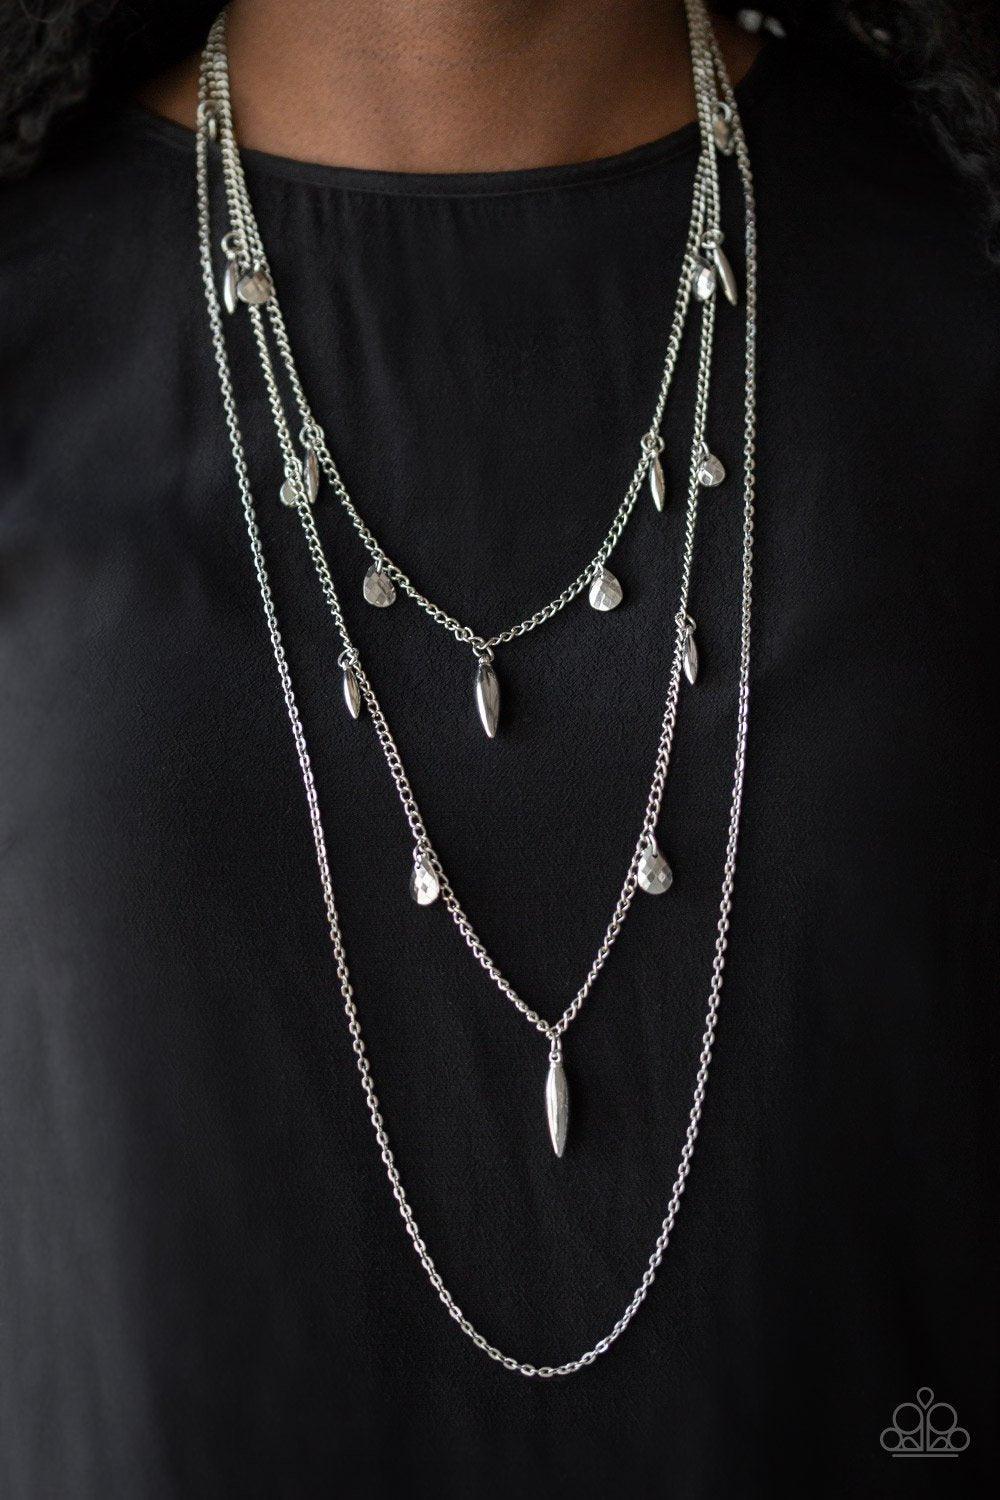 Bravo Bravado Silver Necklace - Jewelry by Bretta